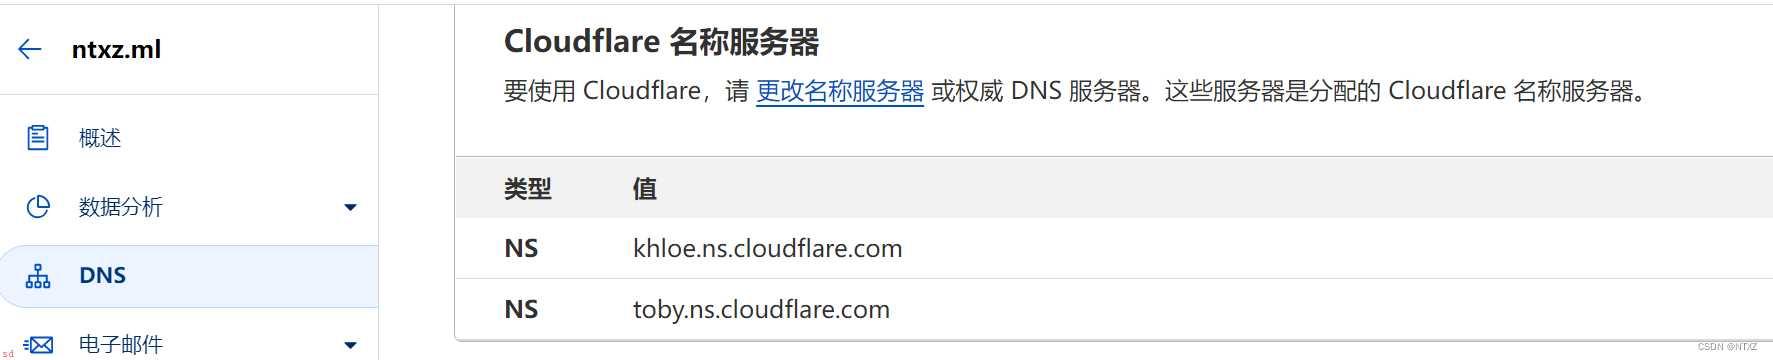 利用cloudflare让未备份域名转发至自己服务器地址